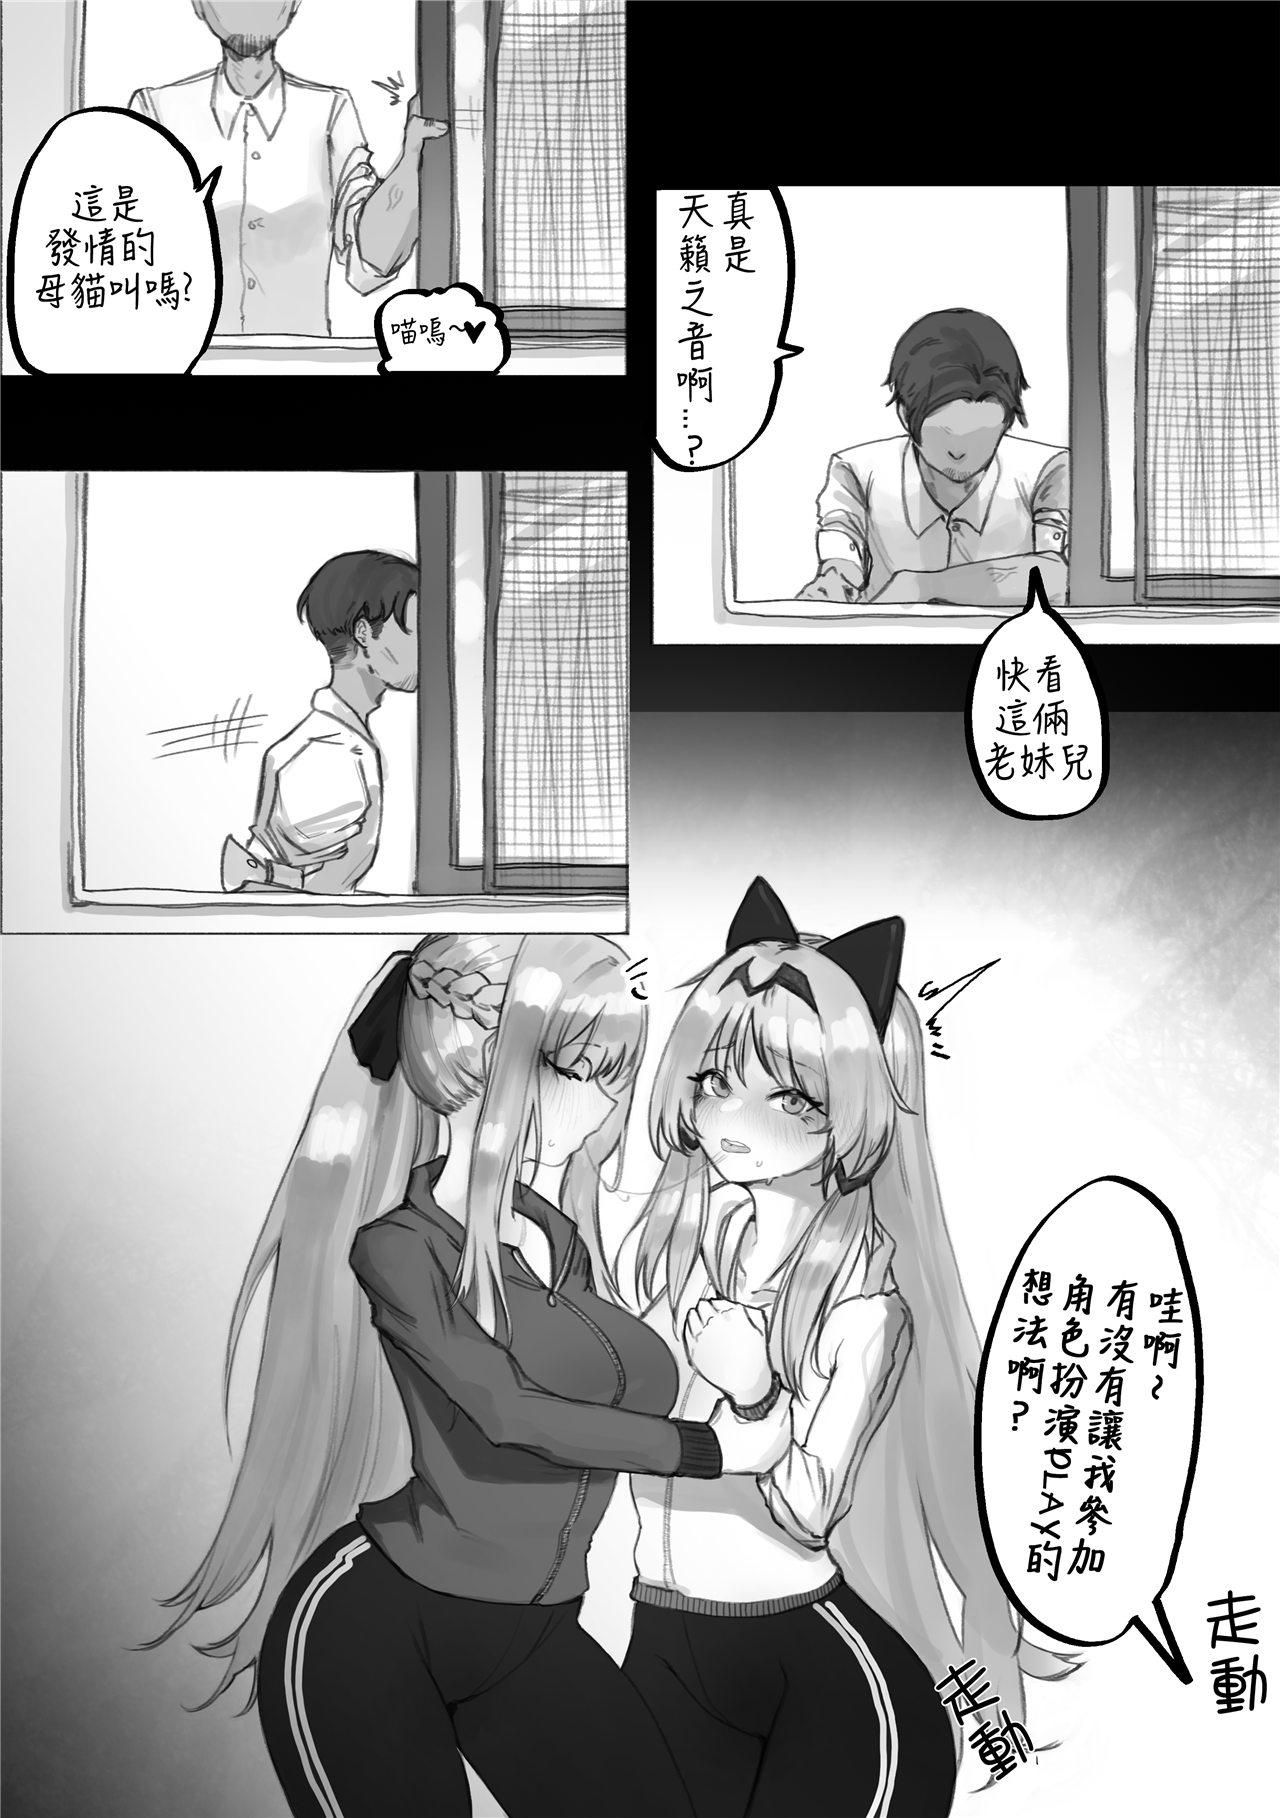 Gay Bukkakeboys FFM Manga - Girls frontline Shaking - Page 4